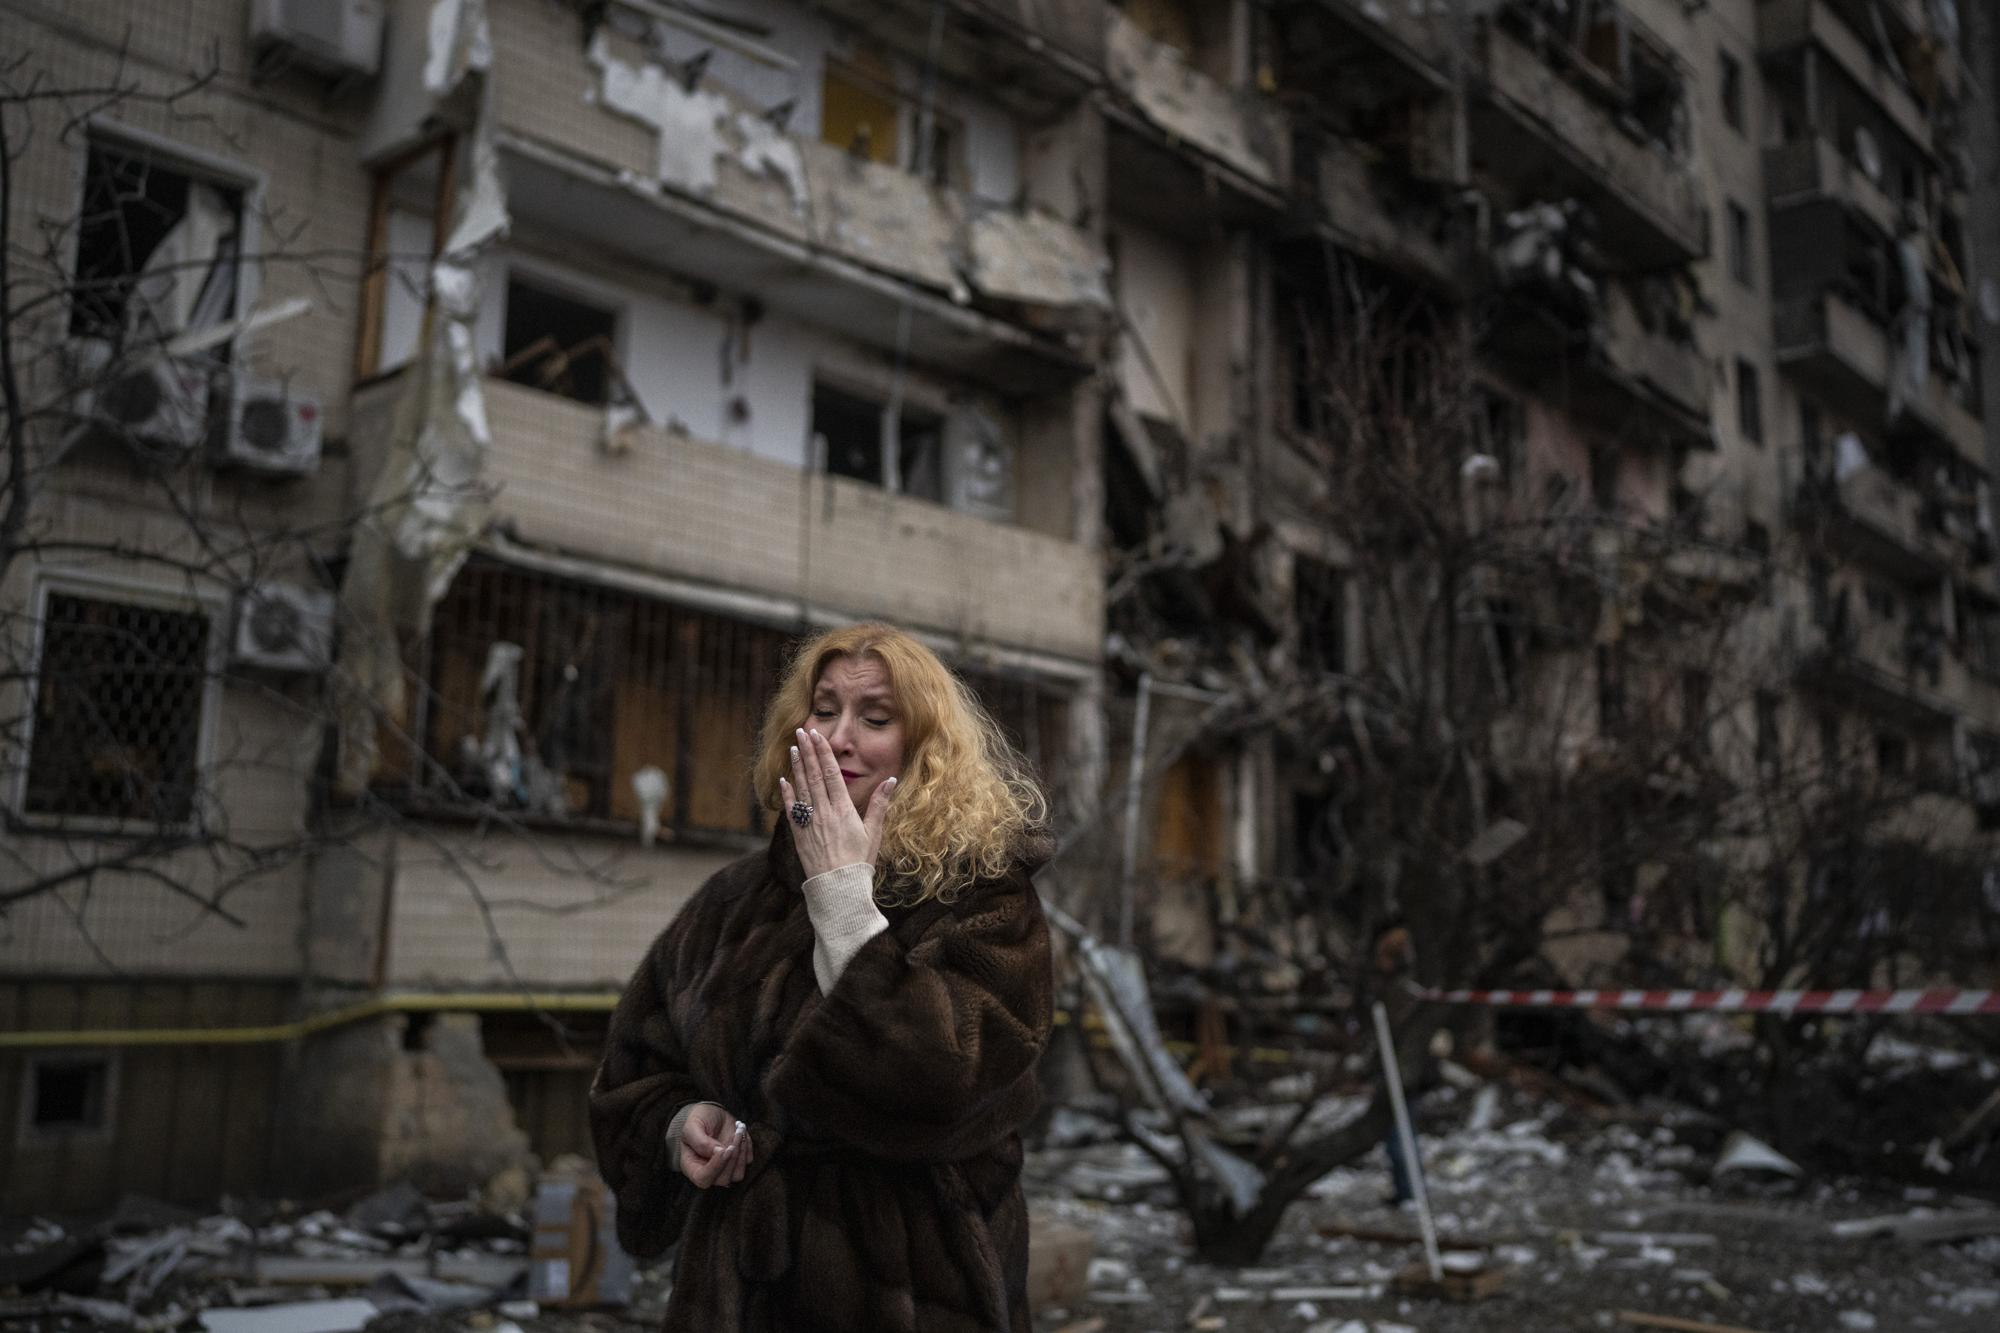 Η Ναταλία Σεβριούκοβα είναι η πρώτη κάτοικος του Κιέβου που «αιχμαλωτίστηκε» από τον φωτογραφικό φακό στις 25 Φεβρουαρίου 2022 να κλαίει λίγο μετά την καταστροφή του σπιτιού της από ρωσικές βόμβες.